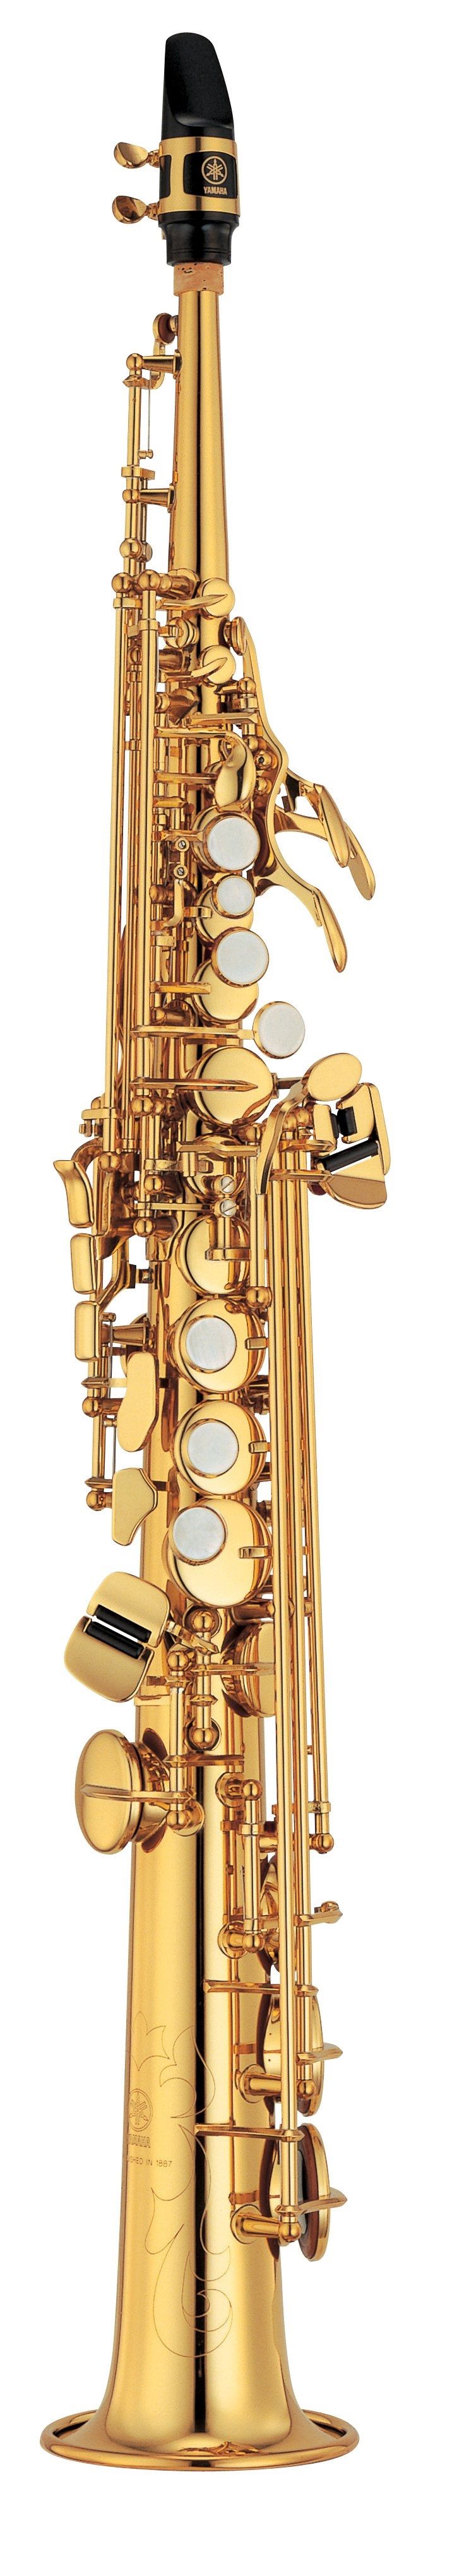 Yamaha - YSS - 475 - II - gerade - Holzblasinstrumente - Saxophone | MUSIK BERTRAM Deutschland Freiburg